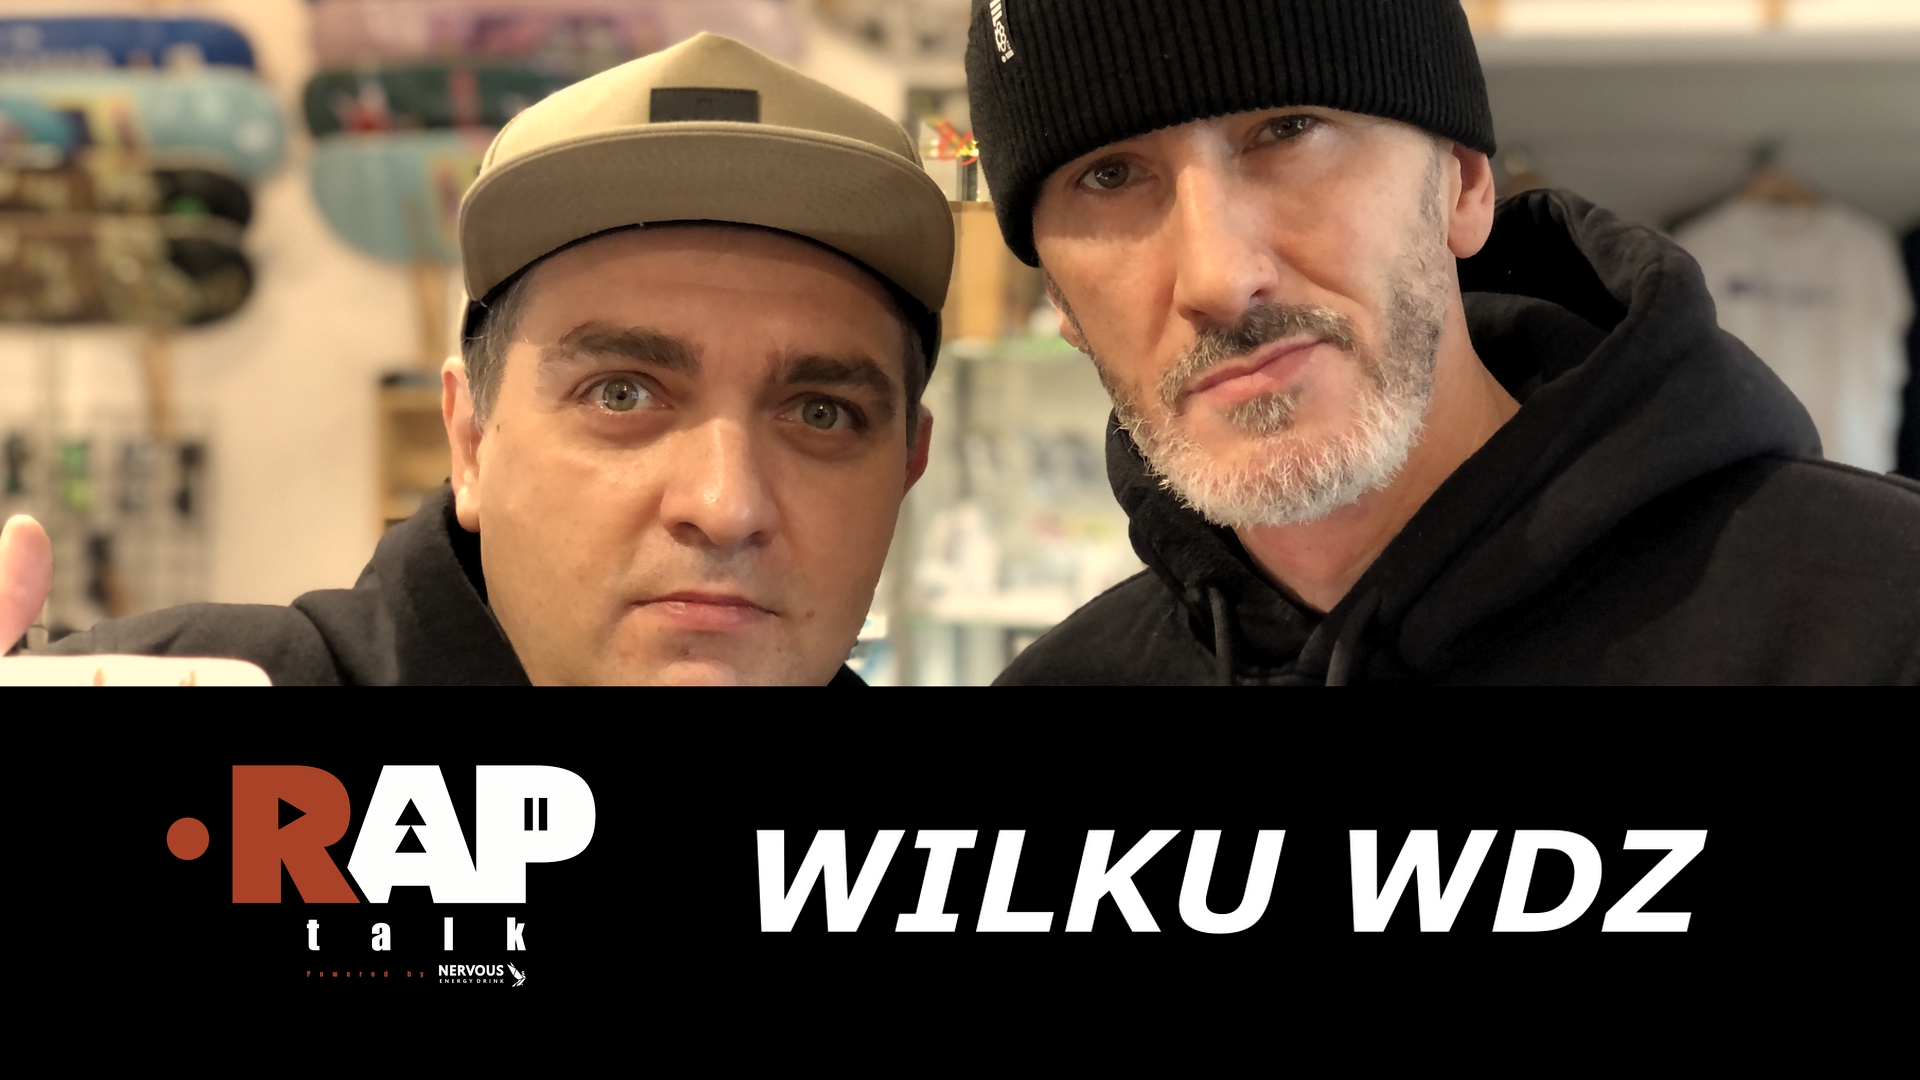 WILKU WDZ - RAPTALK S02E03